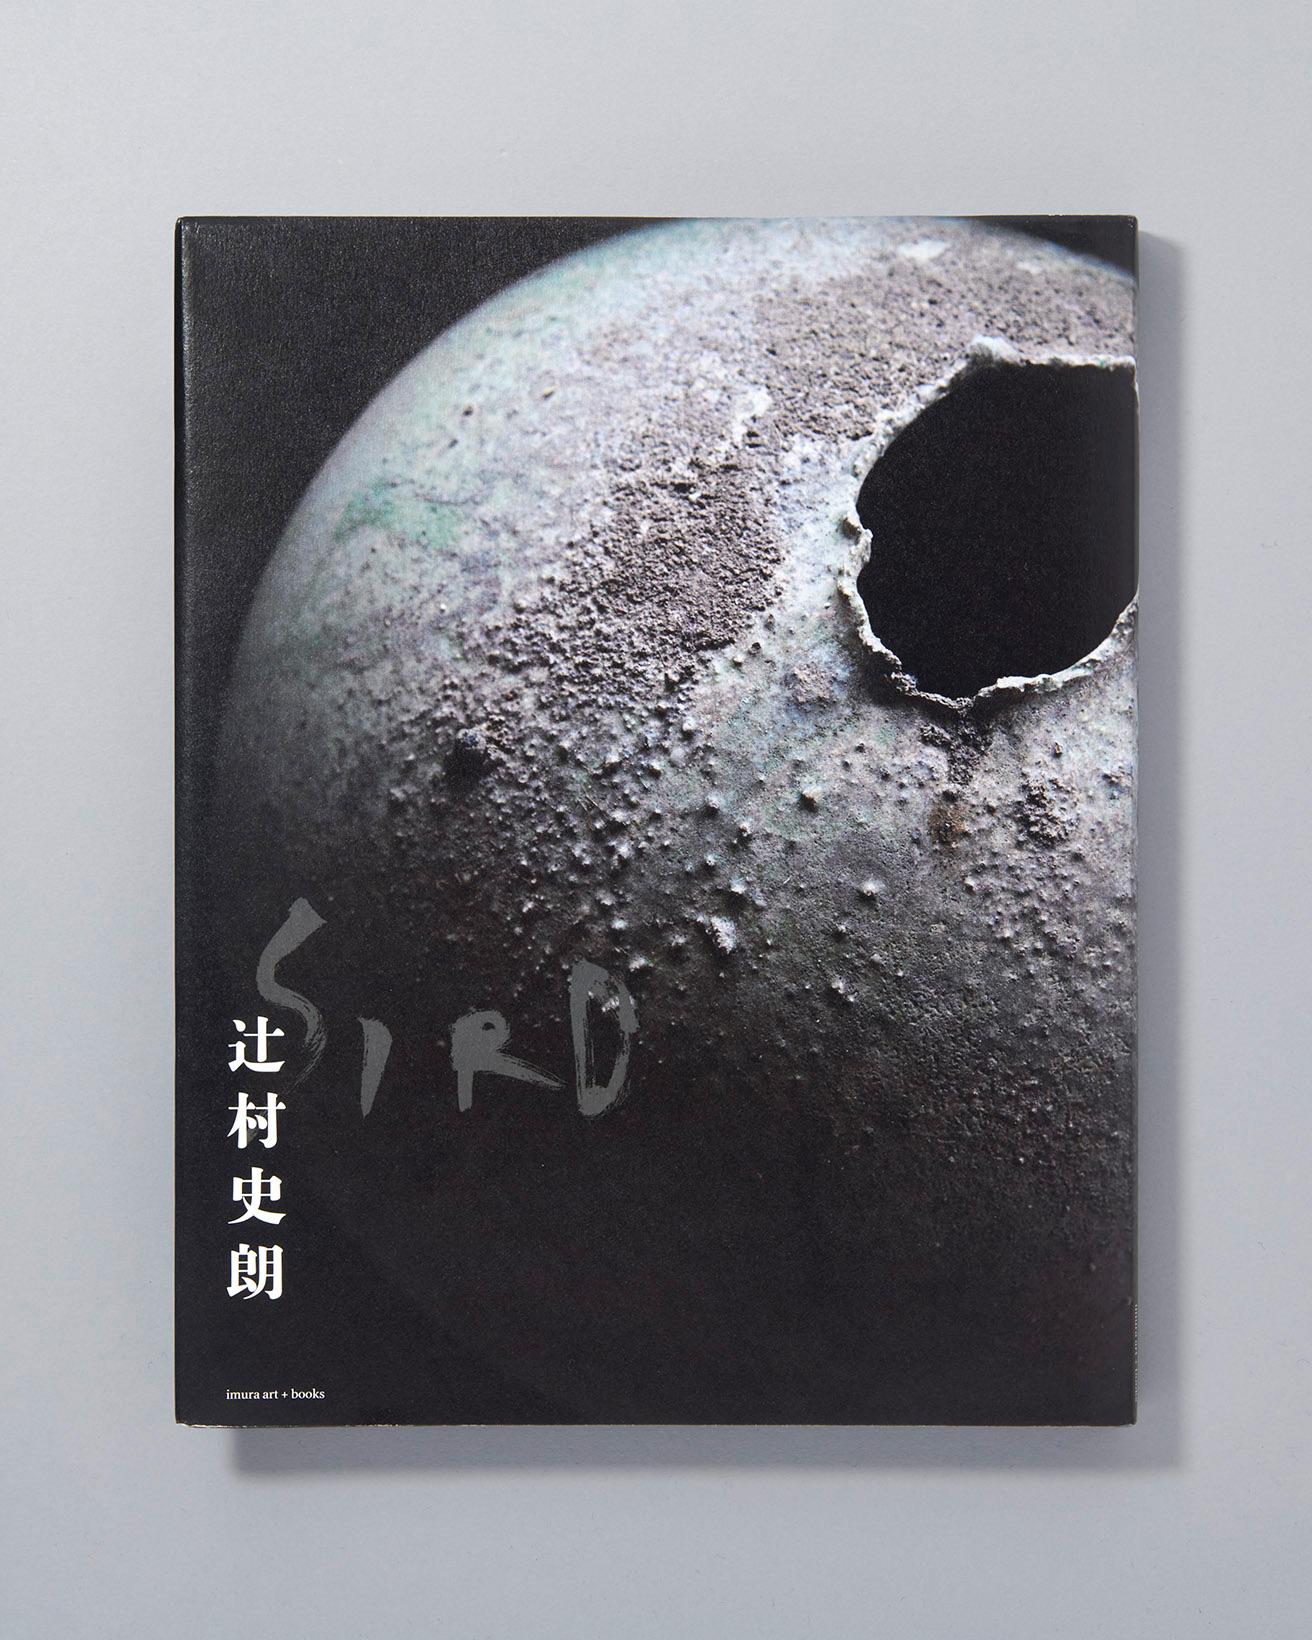 美術館「えき KYOTO」で2022年5月に開催した辻村史朗展に合わせて出版された初の書籍。作品の撮り下ろしと共に辻村の言葉の数々が綴られる。1974年、27歳当時に書いた“唯一の”手記「器と心」も掲載。『辻村史朗 Shiro Tsujimura』imura art＋books3,850円/2022年。